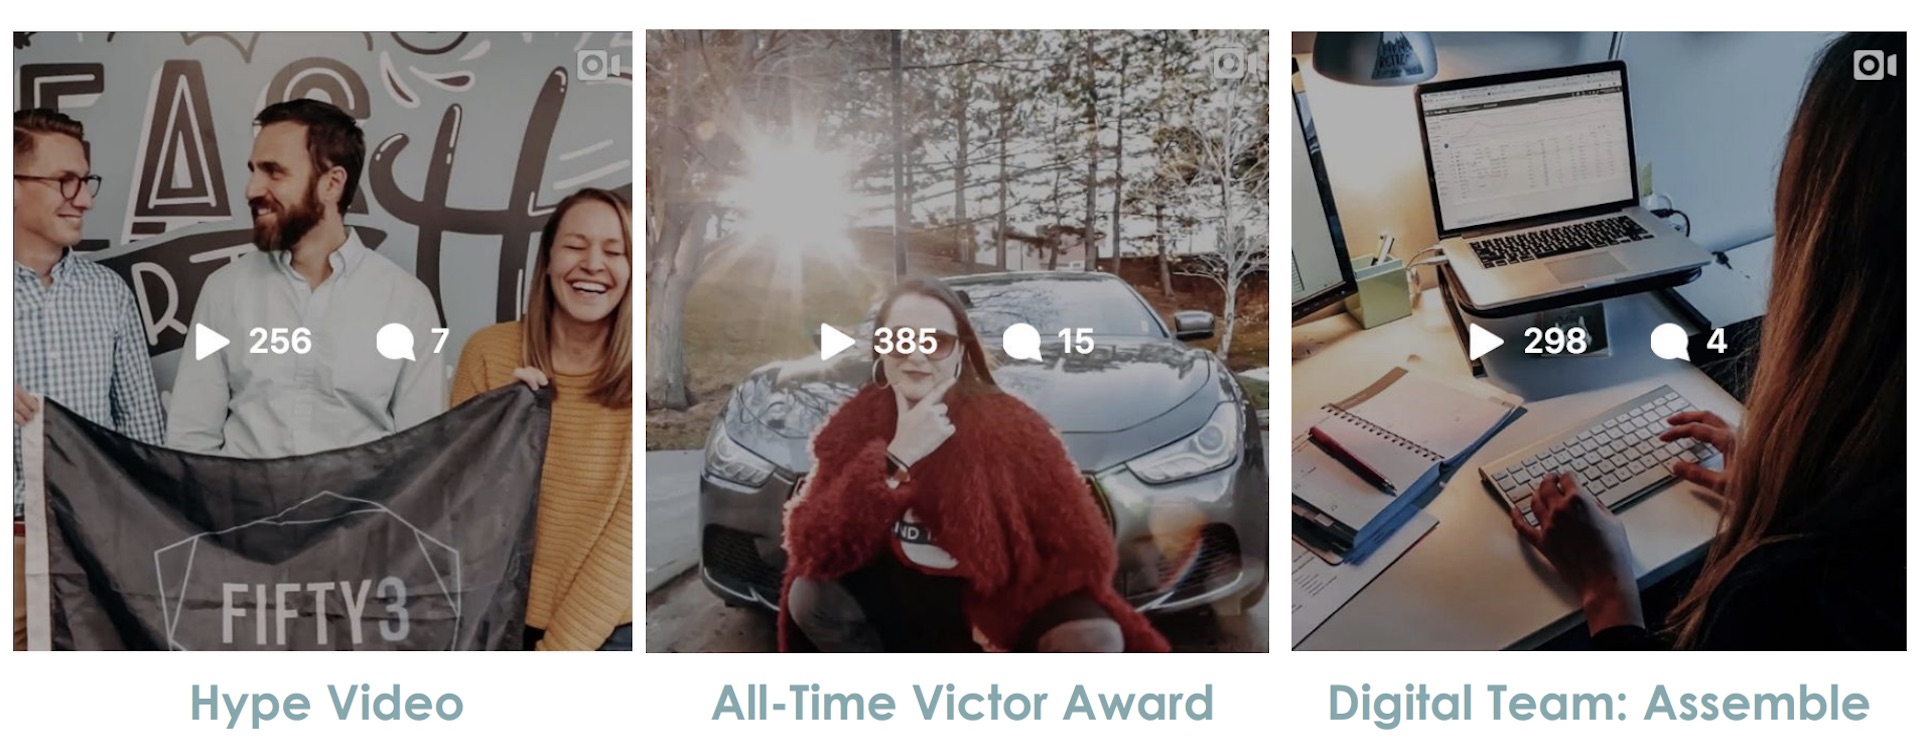 Vega Digital Awards Winner - Agency FIFTY3 Social Media Campaign 2019